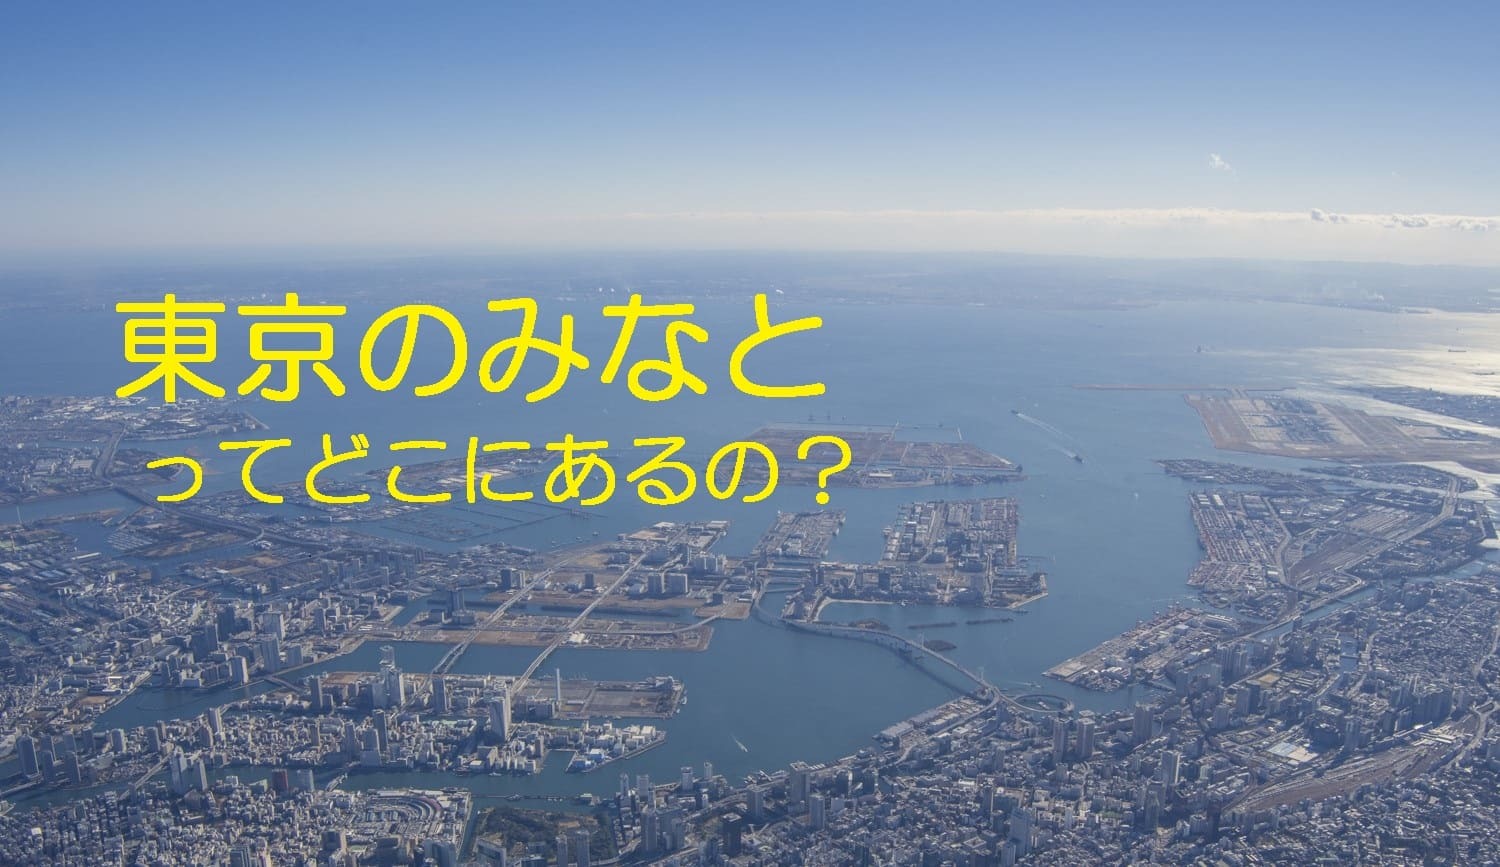 座学<br />
〇業界団体である東京港運協会による東京港の概要説明<br />
〇東京には、日本一の外国貿易貨物量を誇る東京港がありますが、横浜港や神戸港のように知られておらず、マスコミの報道も東京湾になってしまいます。そこで、改めて東京港の概要を紹介します。<br />
（場所：東京港運協会会議室）